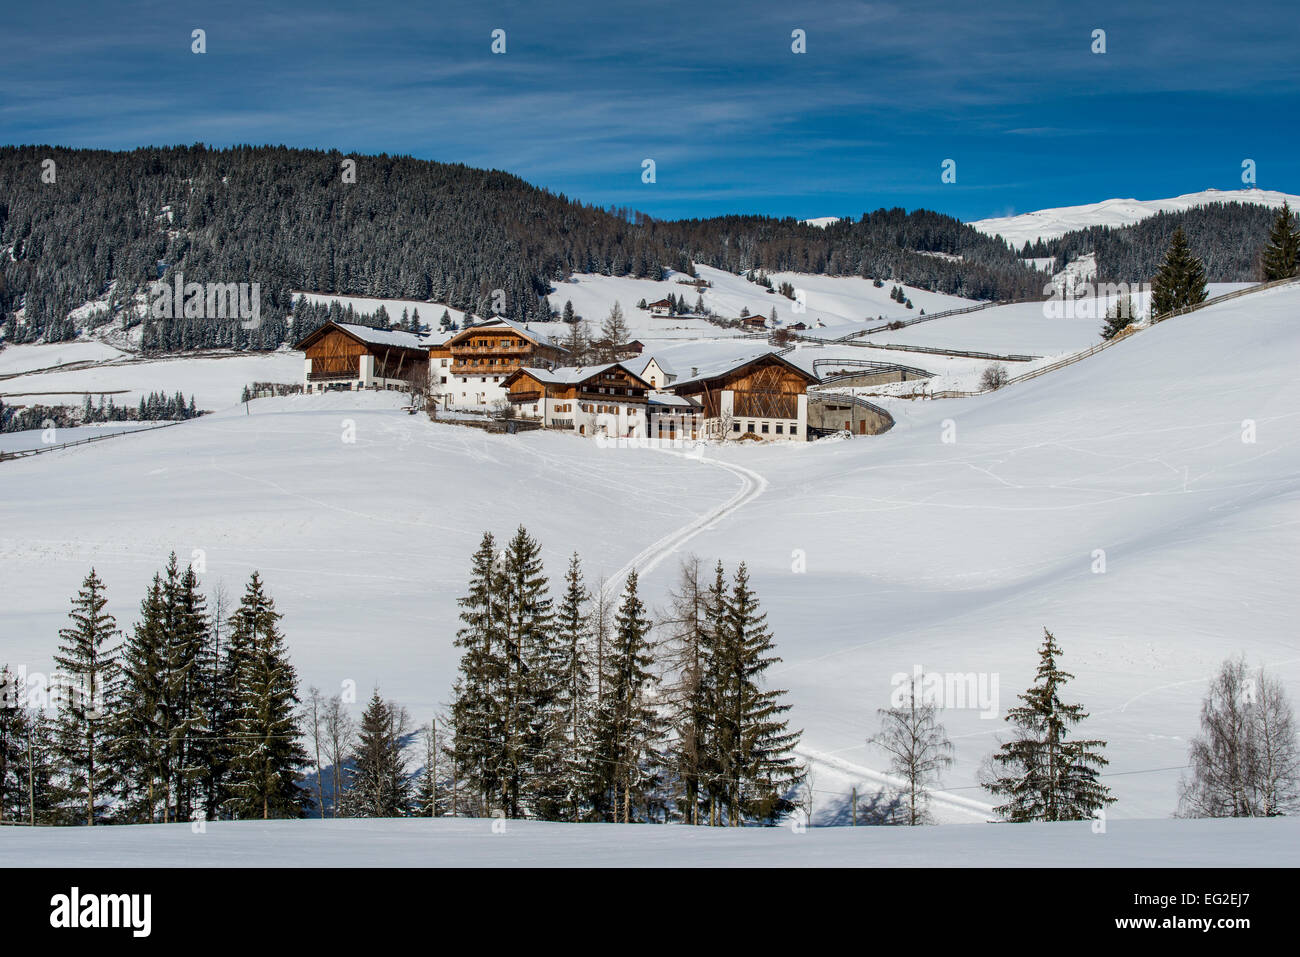 En hiver vue panoramique d'un village de montagne en Villnoss ou Val di Funes, Alto Adige - Tyrol du Sud, Italie Banque D'Images